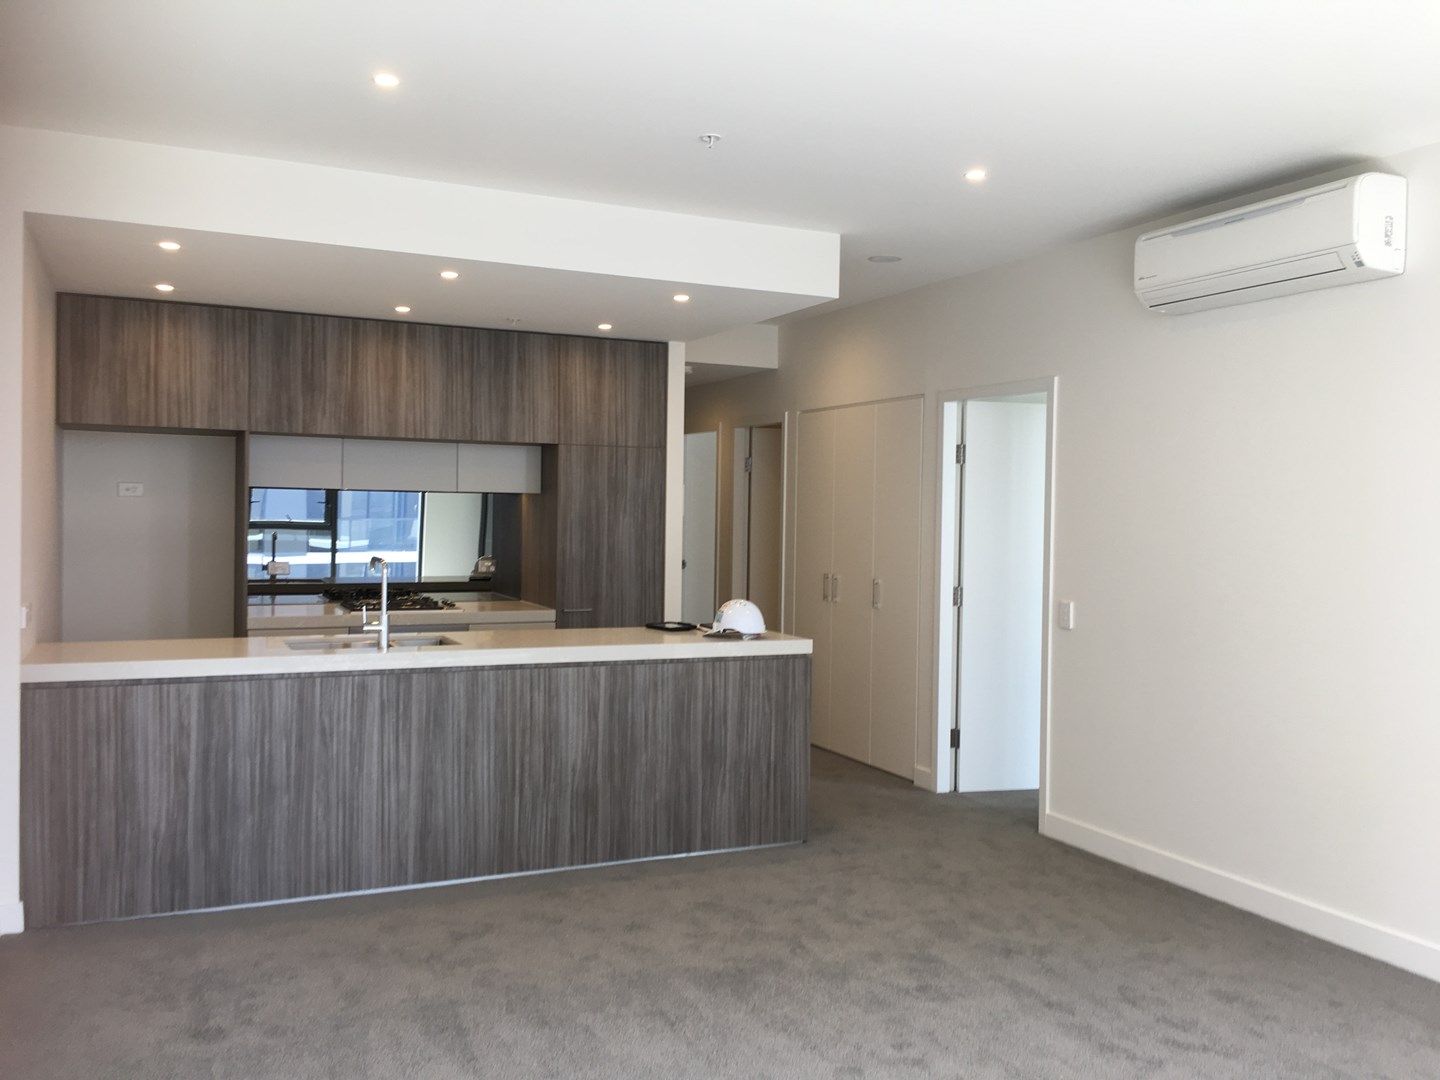 2 bedrooms Apartment / Unit / Flat in C607/5 Delhi Road NORTH RYDE NSW, 2113